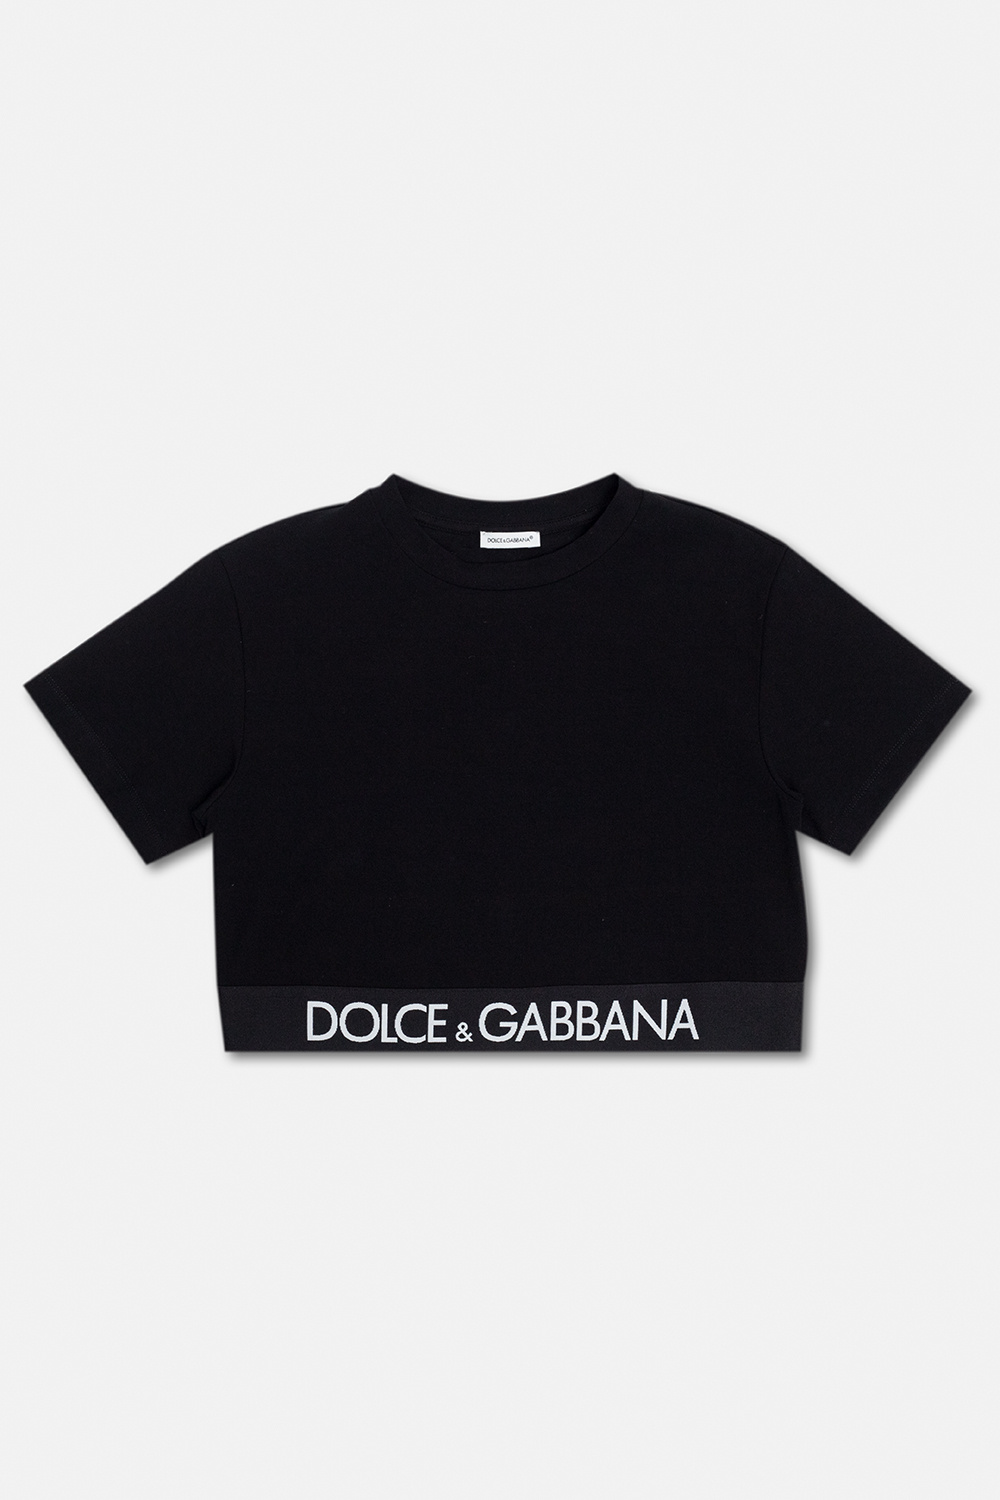 Dolce & Gabbana Kids Роскошное платье в стиле dolce & gabbana